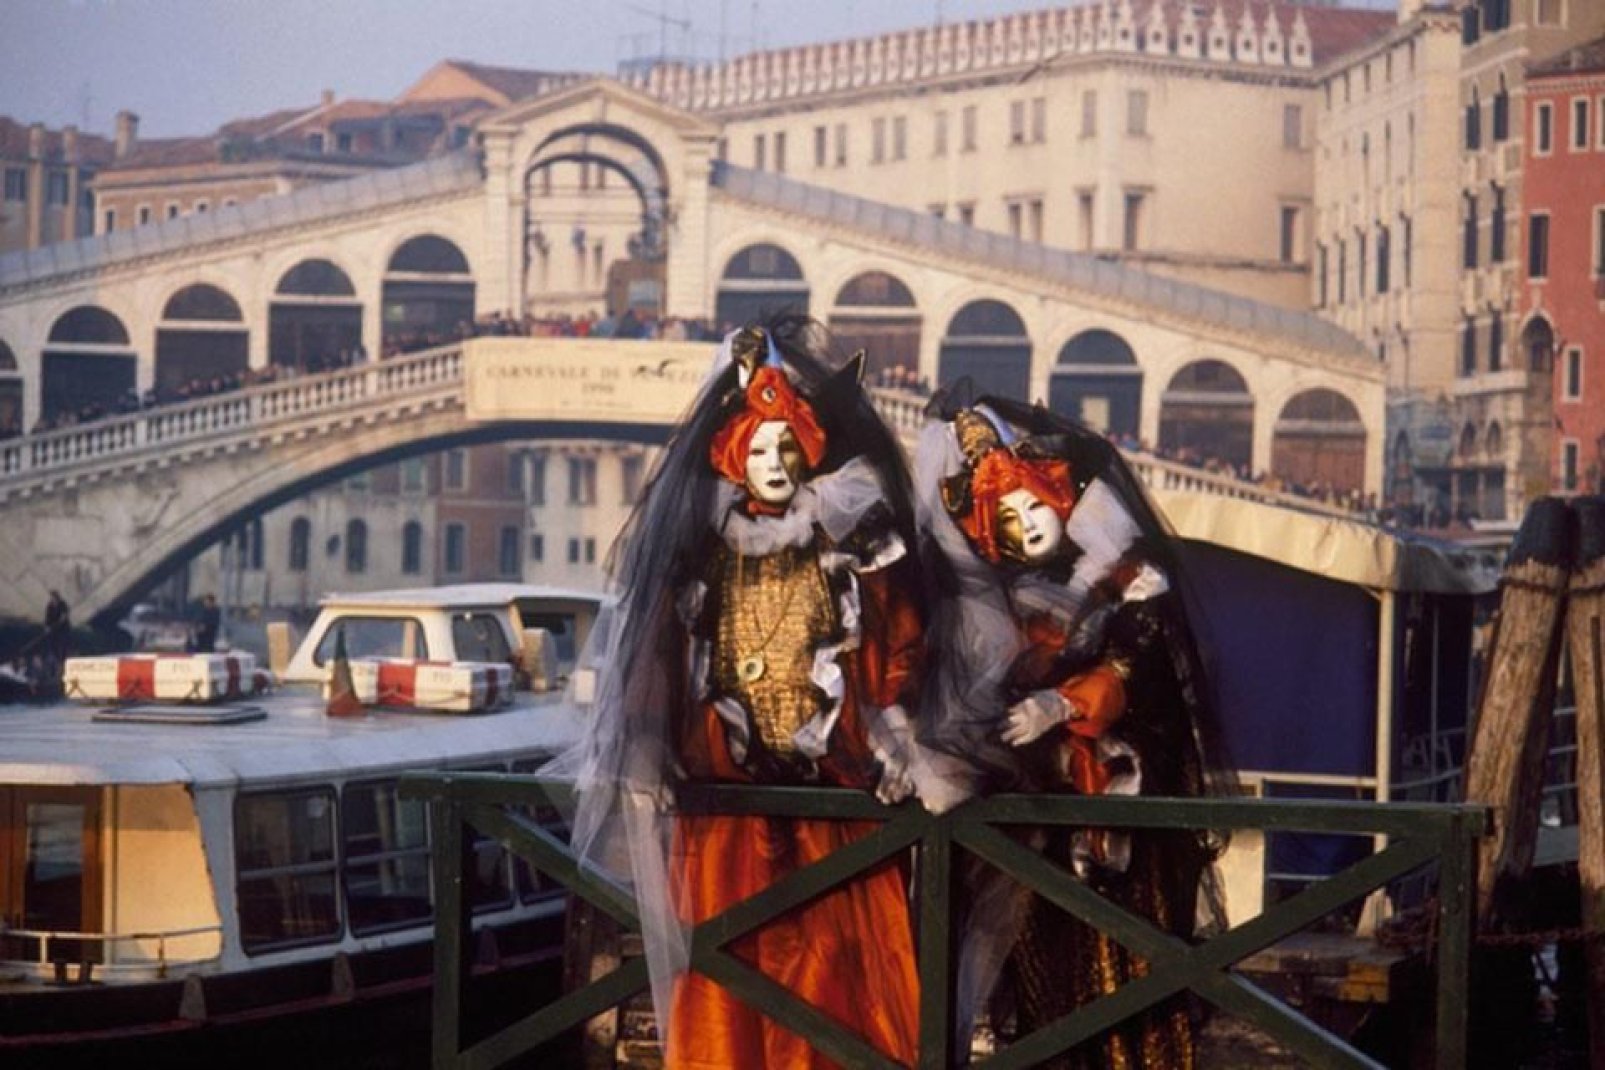 Der Karneval von Venedig ist ein spektakuläres touristisches Großereignis, das tausende Besucher aus der ganzen Welt anzieht.